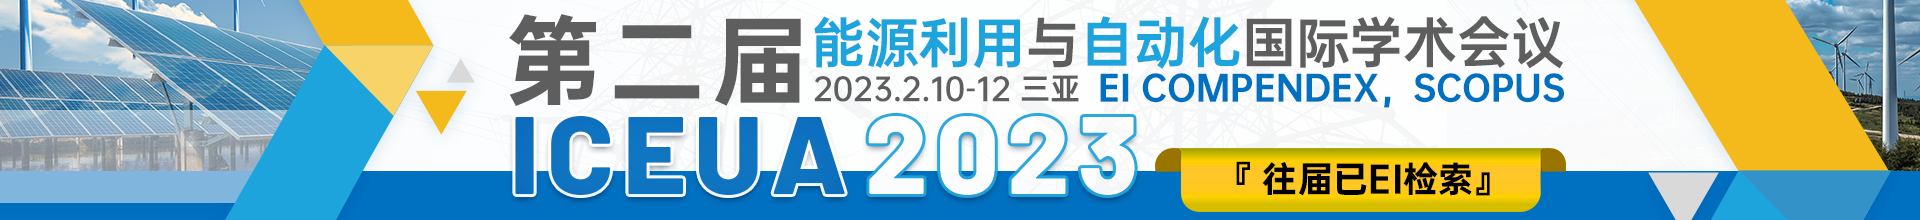 2月三亚-ICEUA 2023会议云banner-20221011.png